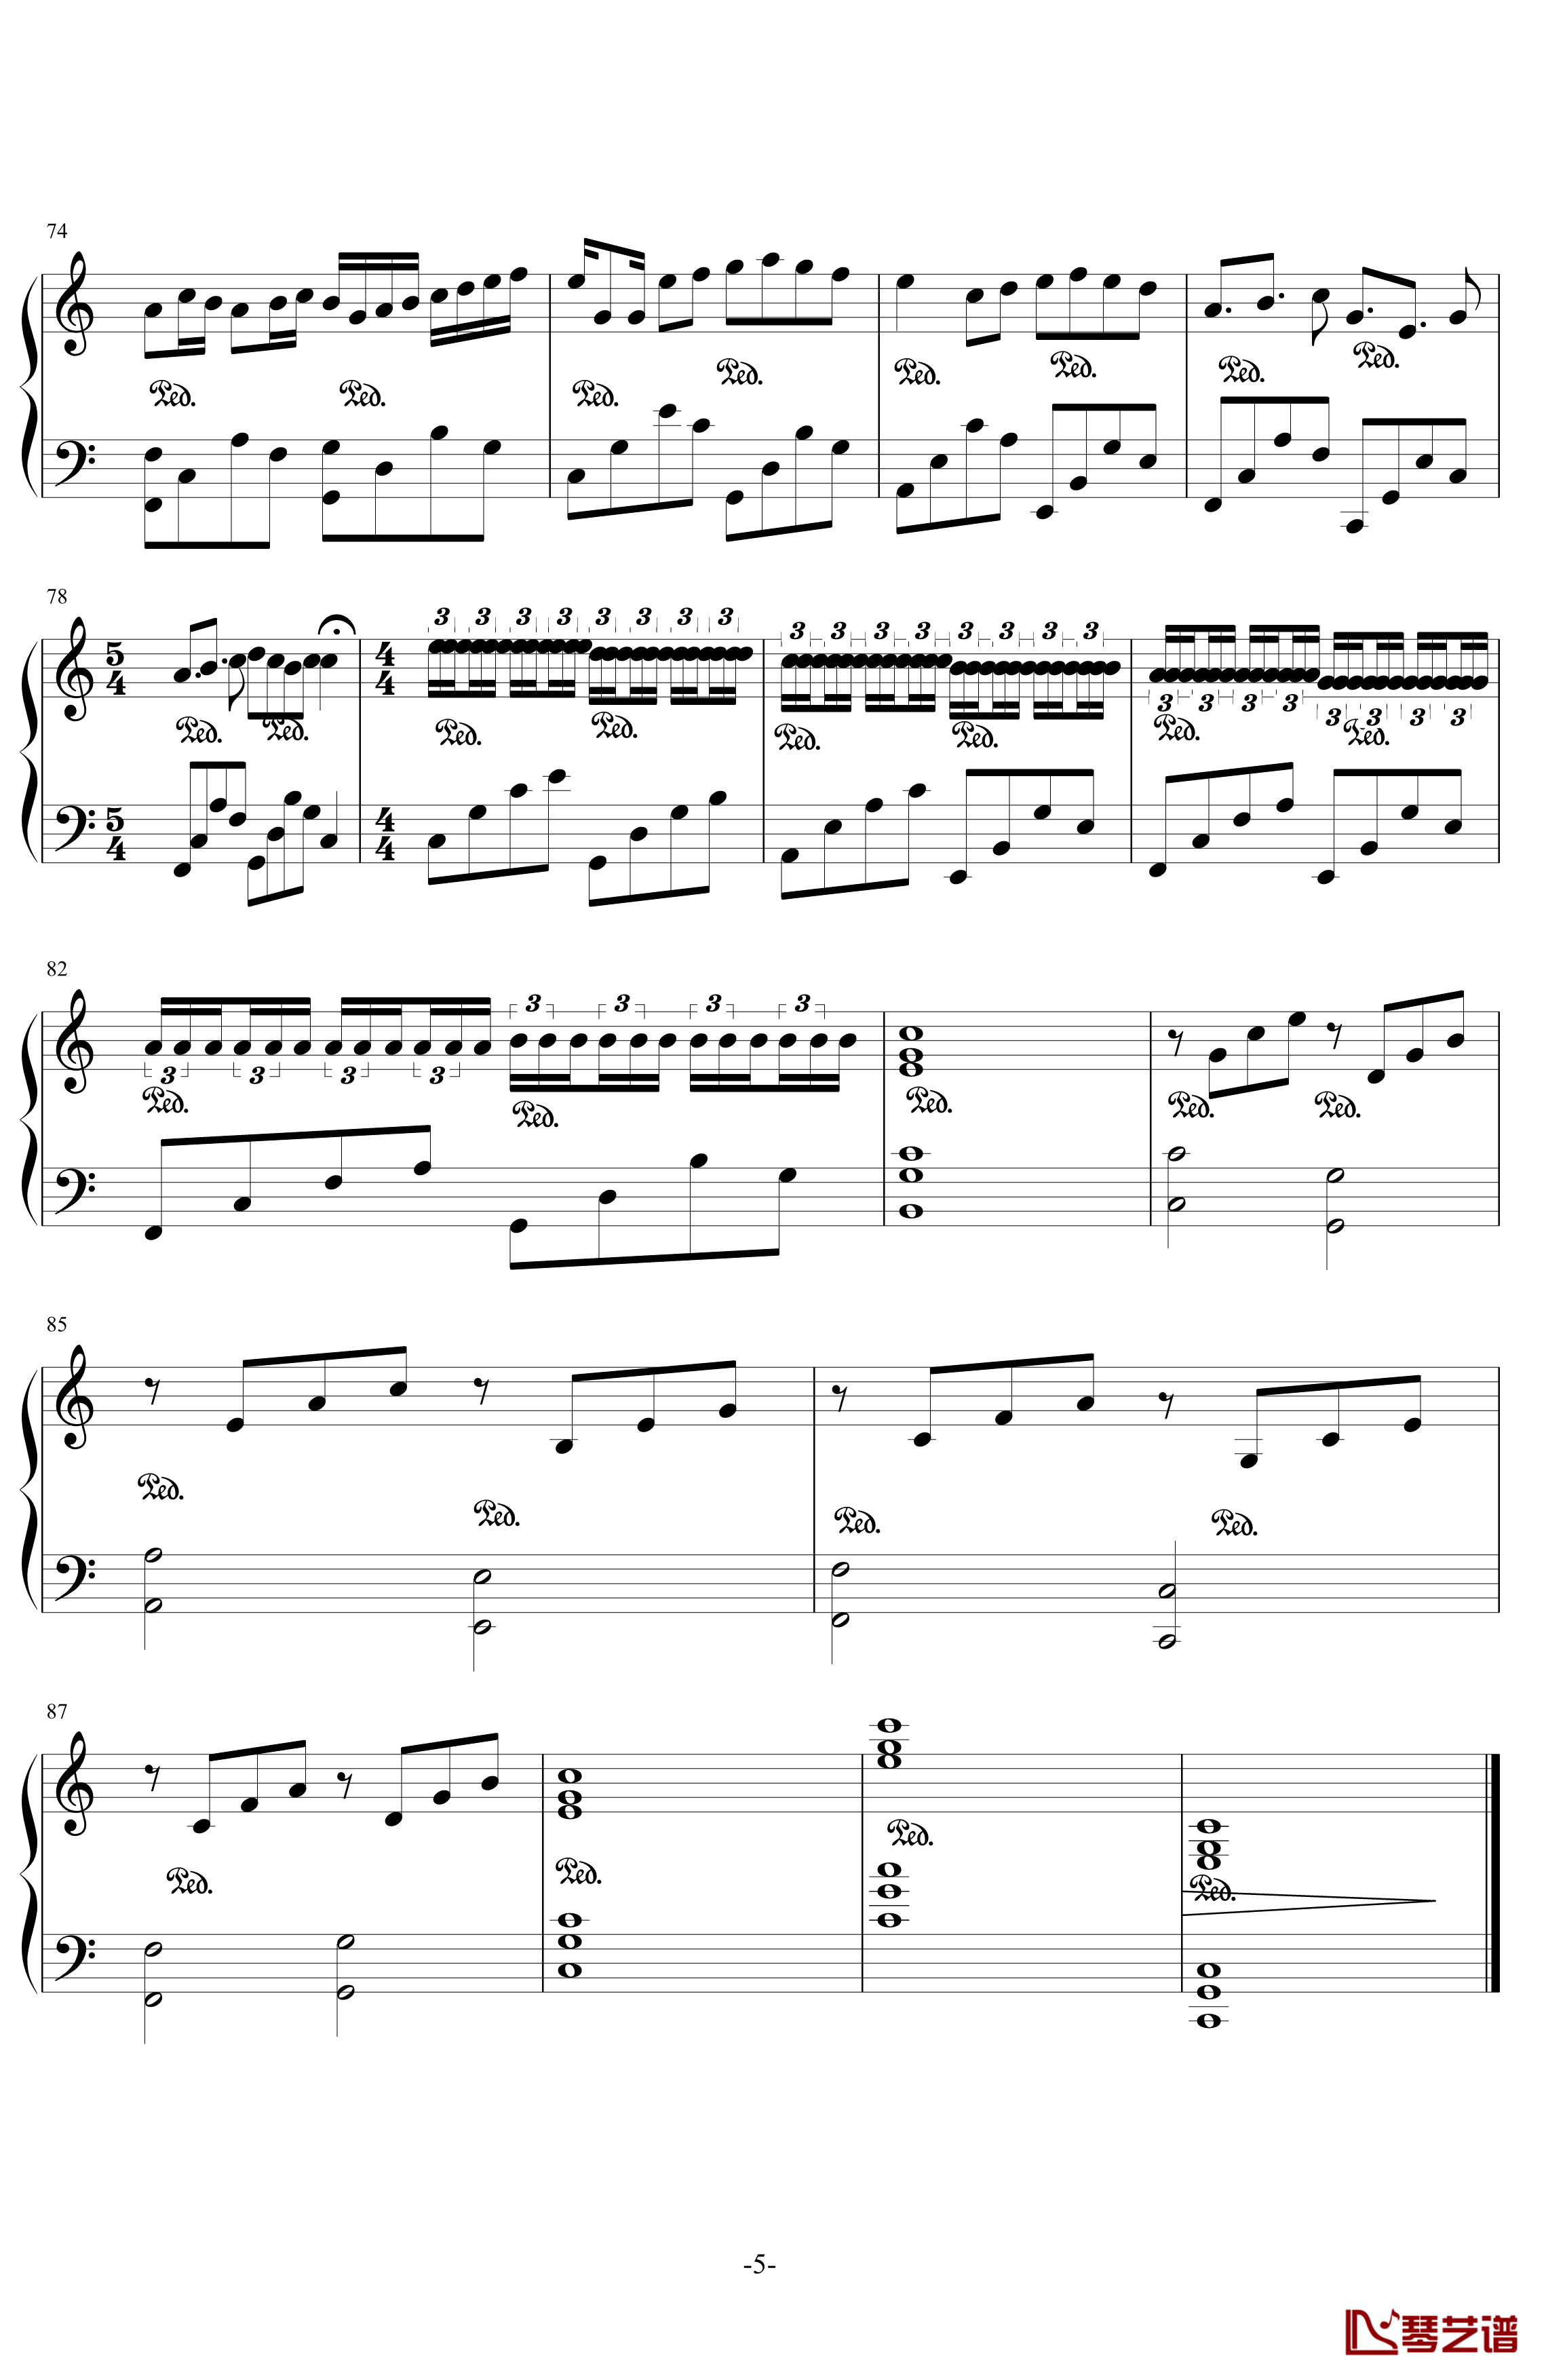 卡农钢琴谱-最有可能超越乔治温斯顿国产版-帕赫贝尔-Pachelbel5